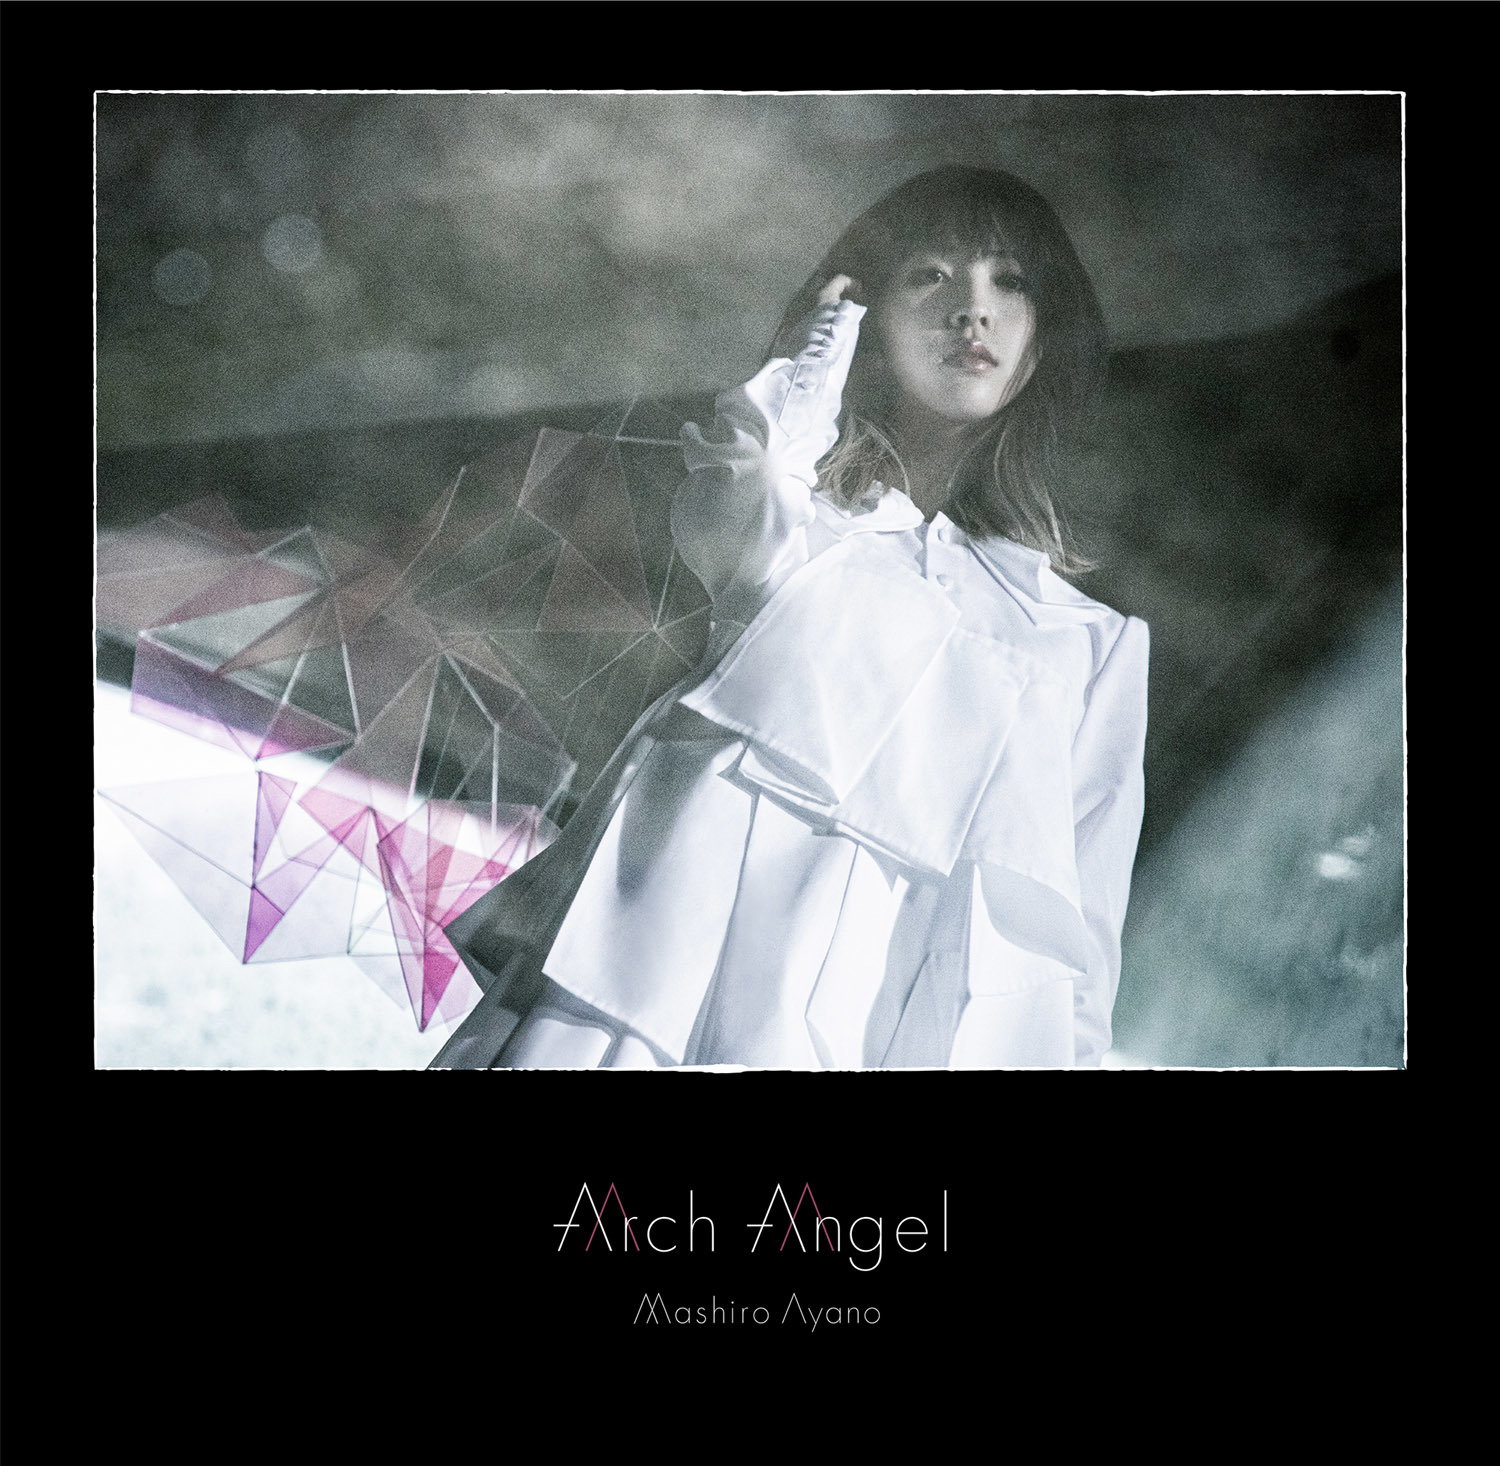 綾野ましろニューアルバム Arch Angel アーティスト写真 ジャケット画像 収録情報を公開 Spice Goo ニュース